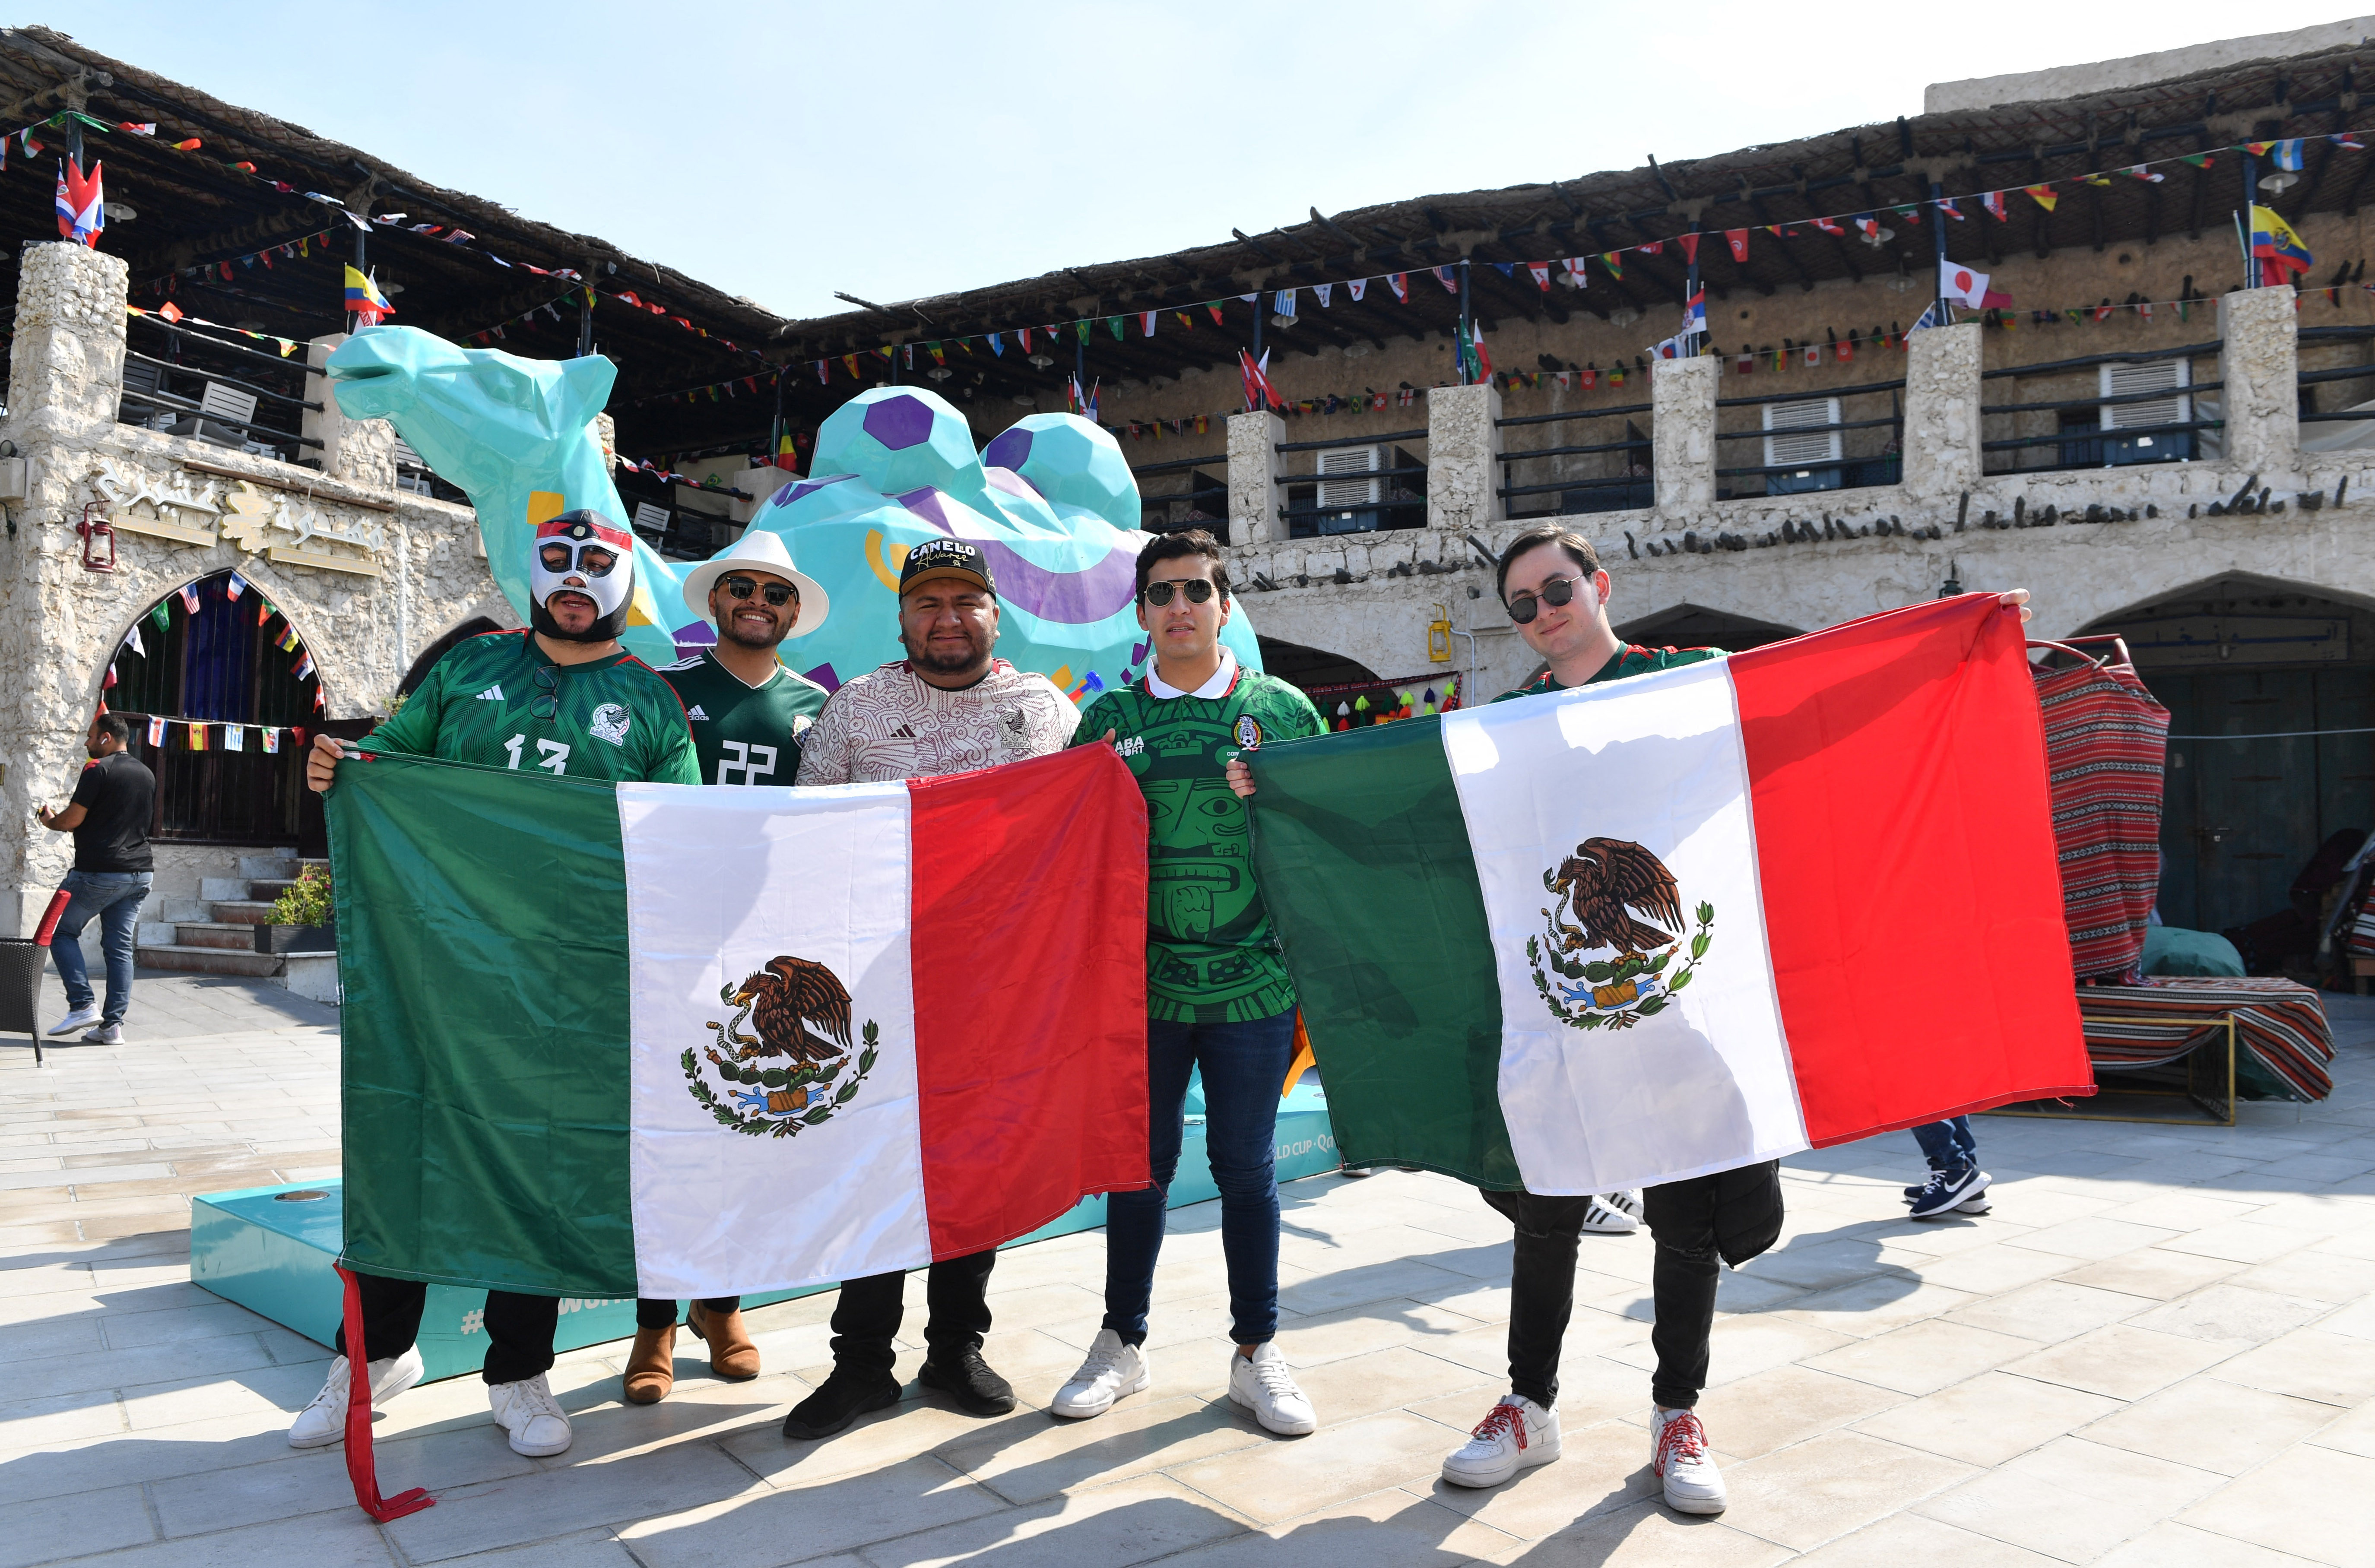 Fútbol Fútbol - Qatar 2022 Copa Mundial de la FIFA - Doha, Qatar - 22 de noviembre de 2022 los aficionados mexicanos posan con su bandera en el Souq antes del partido entre Argentina y Arabia Saudita.  REUTERS/Jennifer Lorenzini